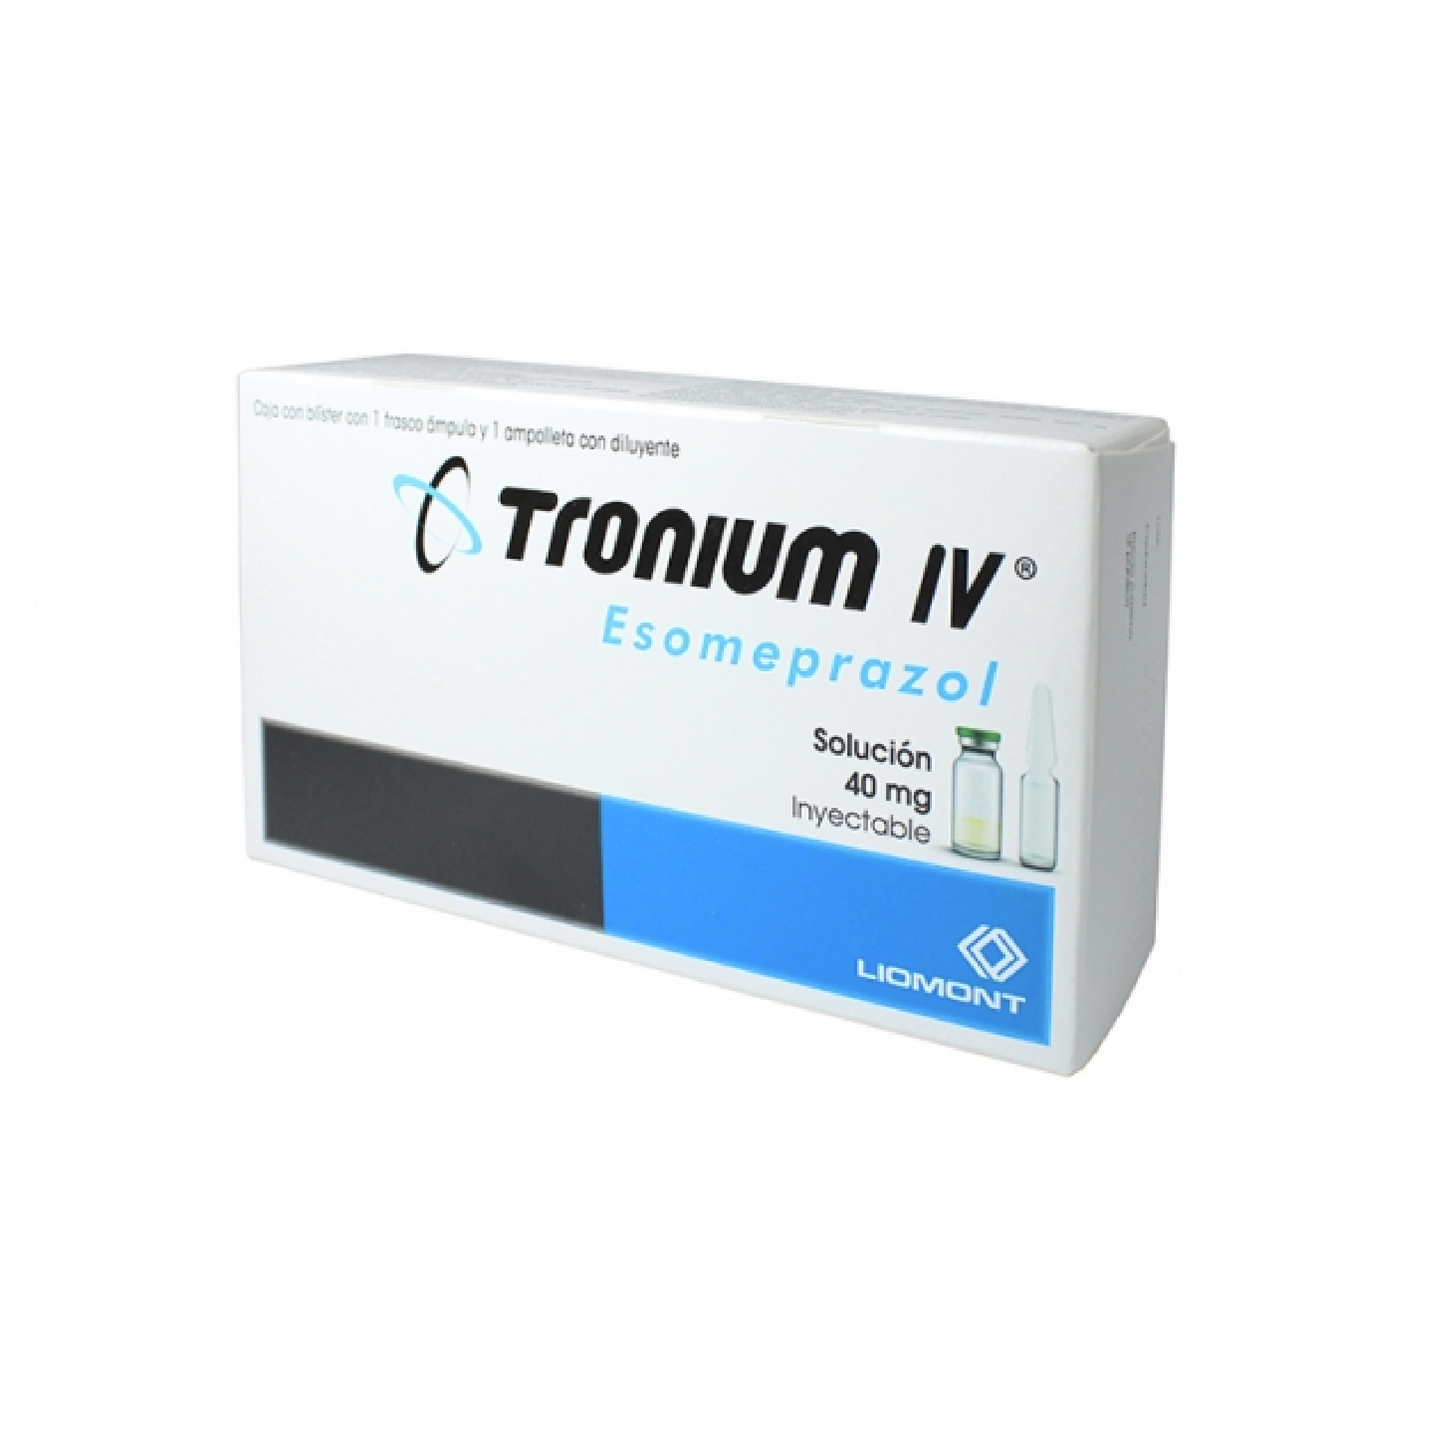 Tronium IV (Esomeprazol) Sol iny 40mg Cja c 1 fco amp